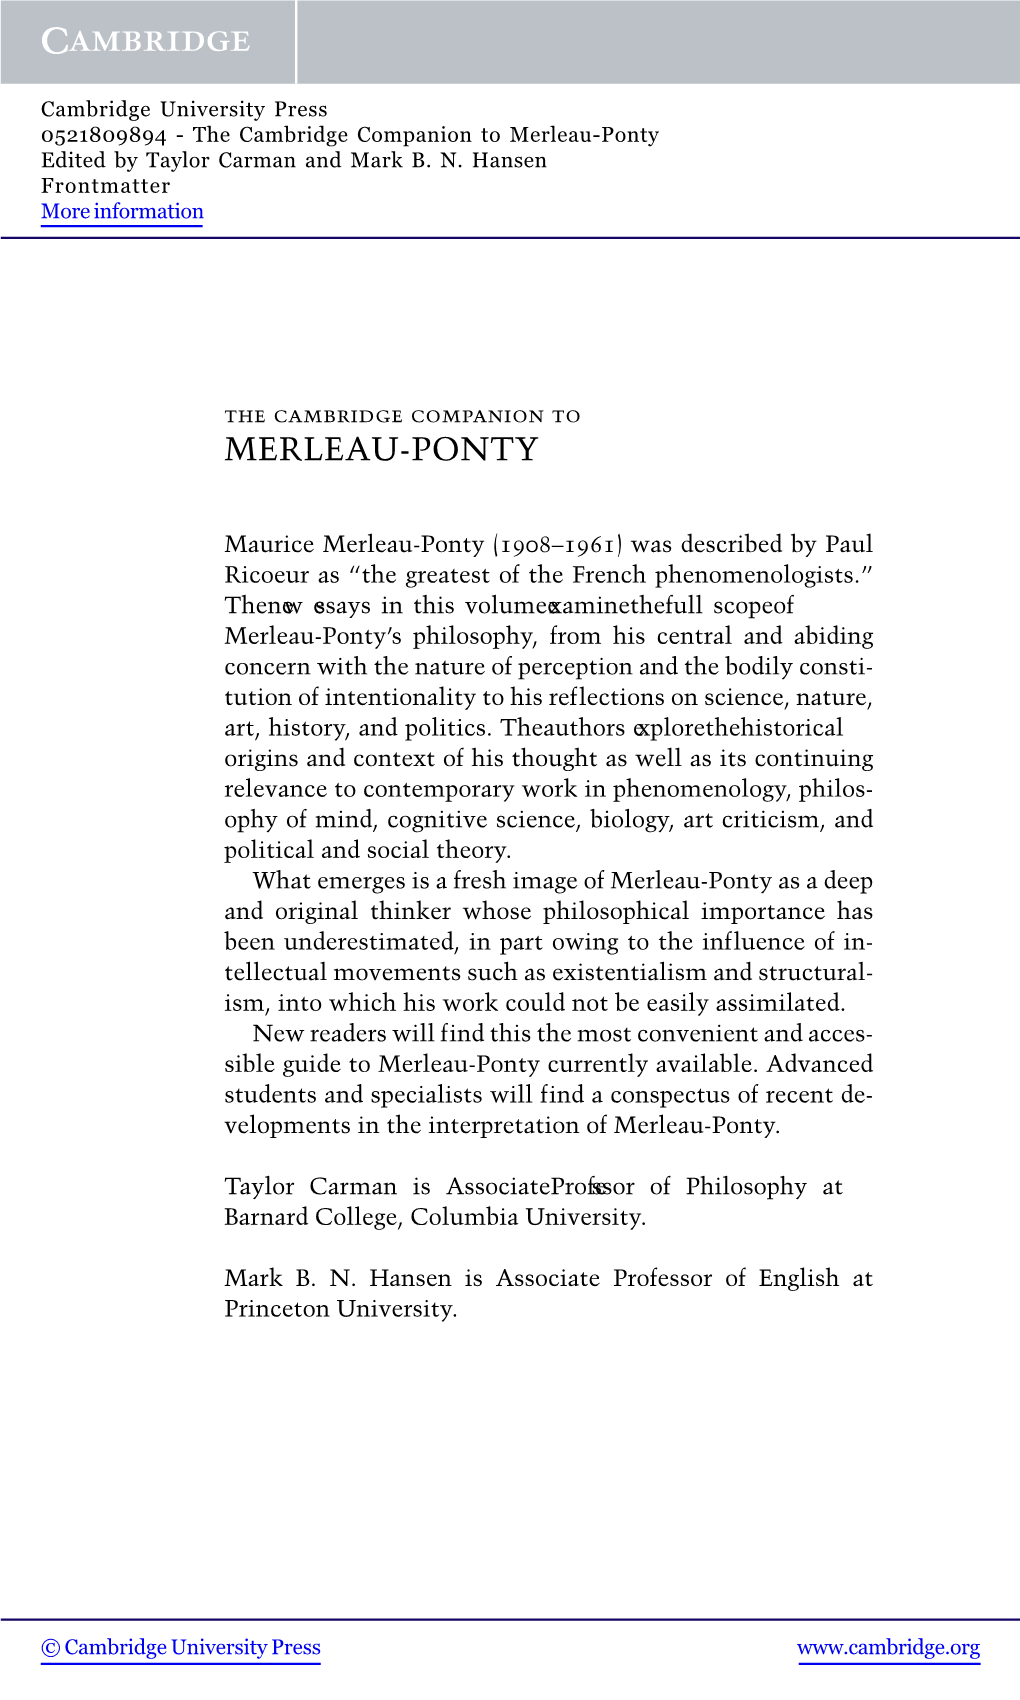 Merleau-Ponty Edited by Taylor Carman and Mark B